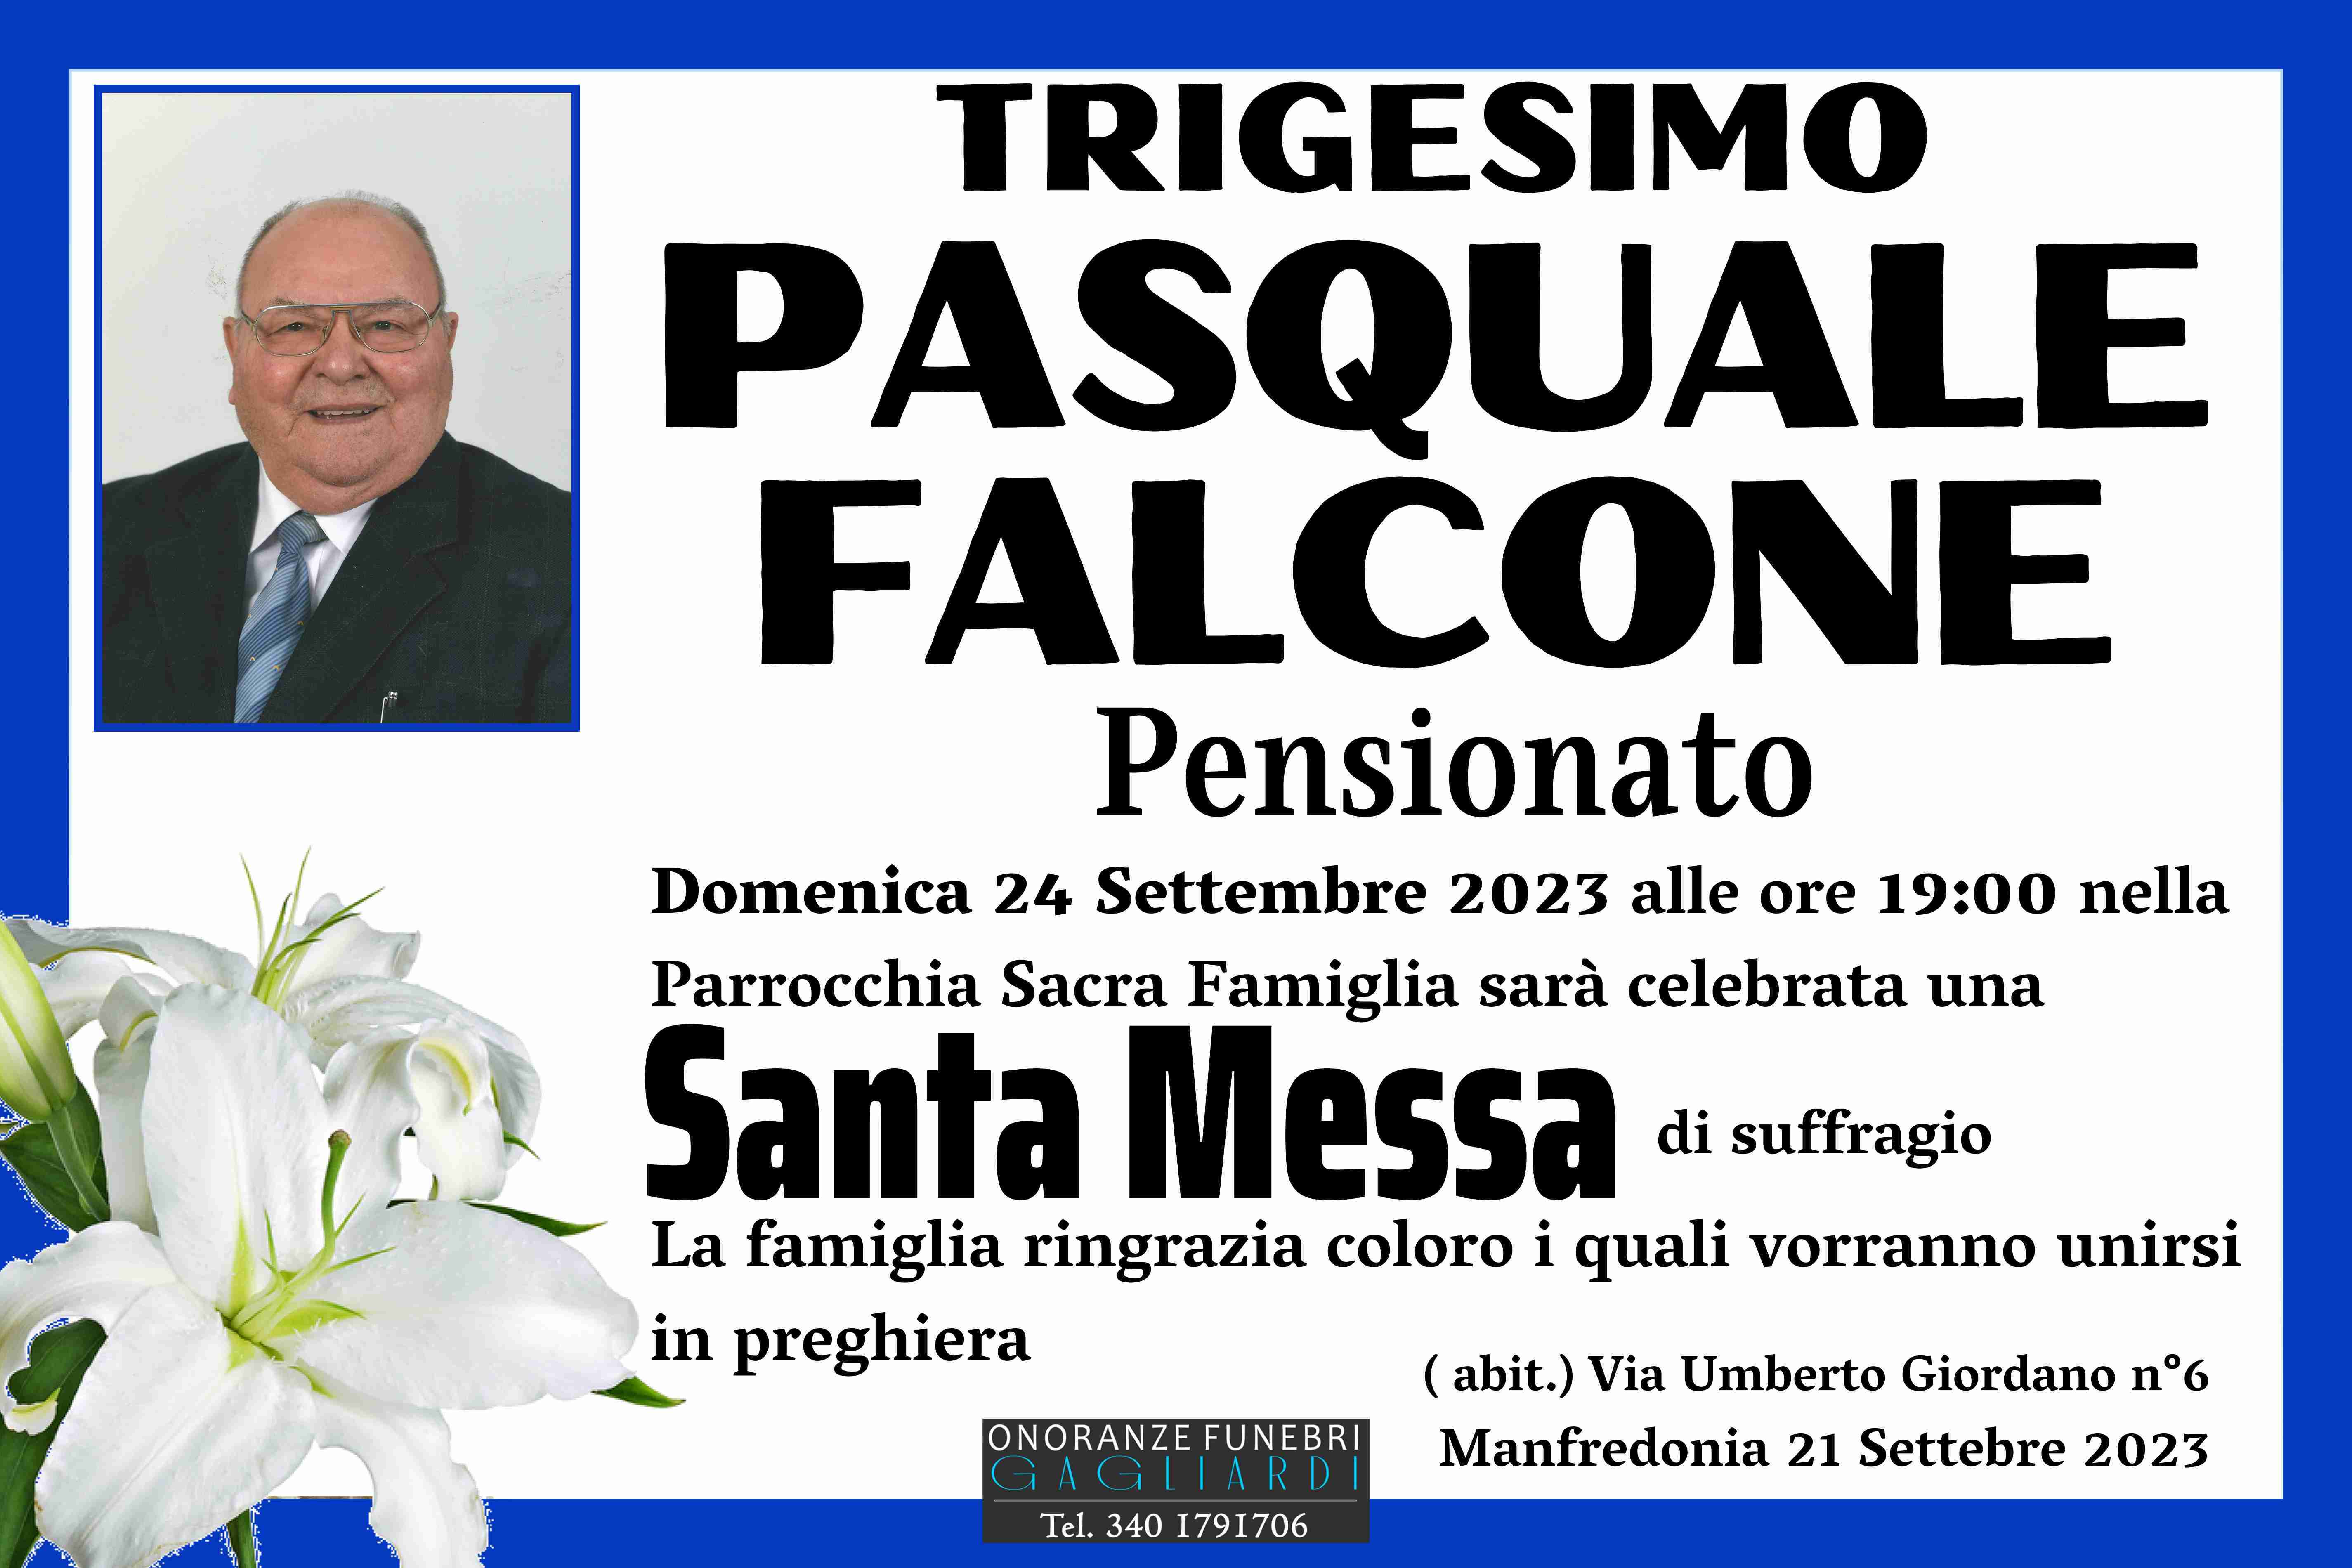 Pasquale Falcone